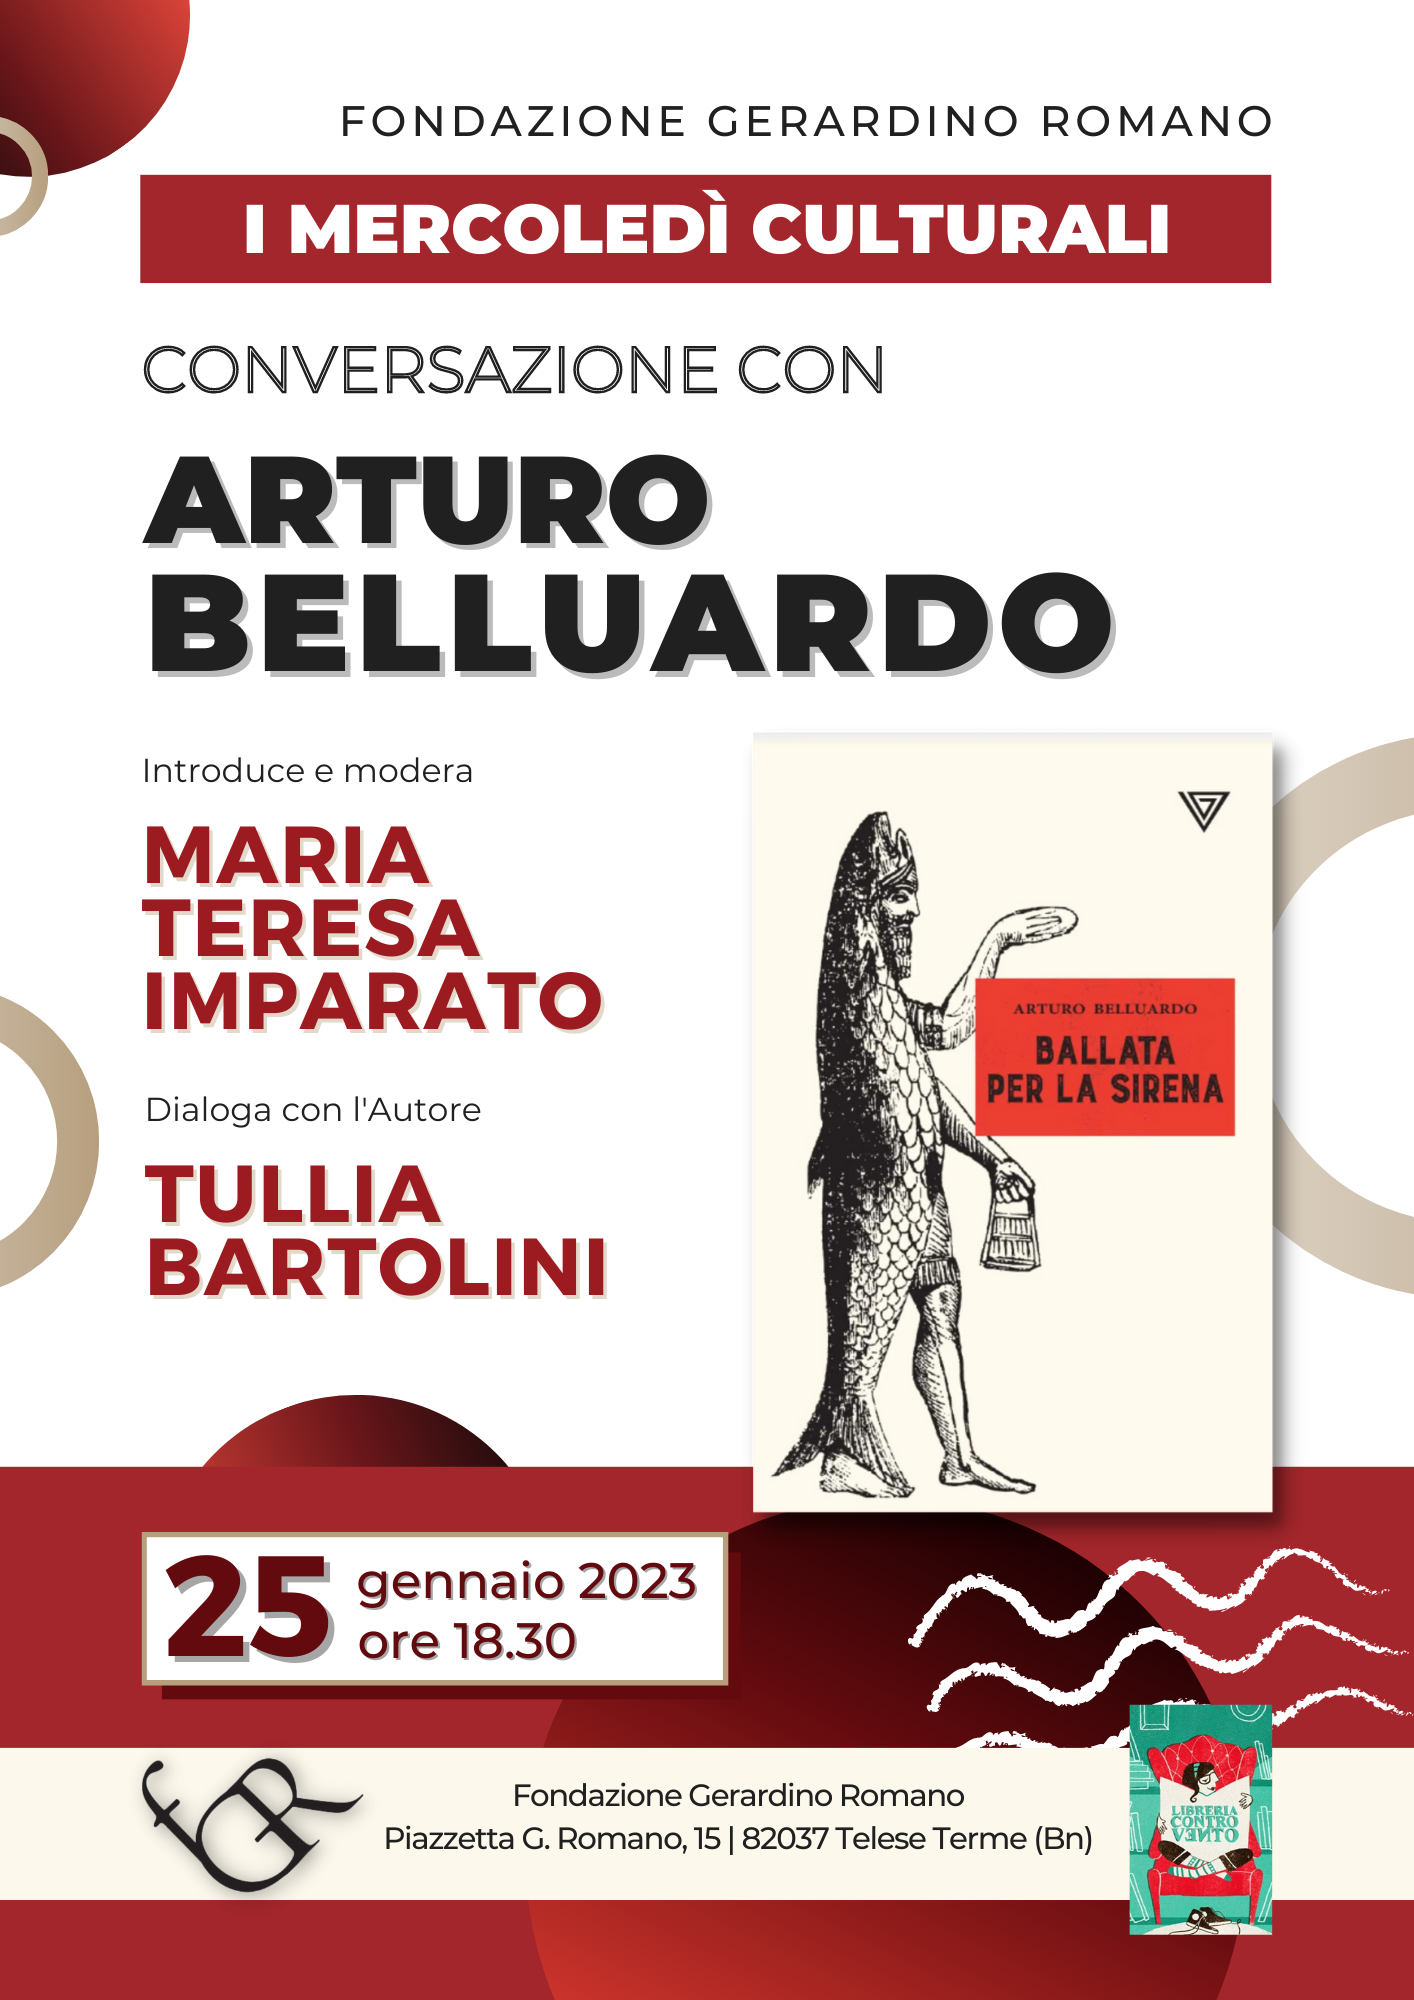 Arturo Belluardo prossimo ospite della Fondazione Gerardino Romano